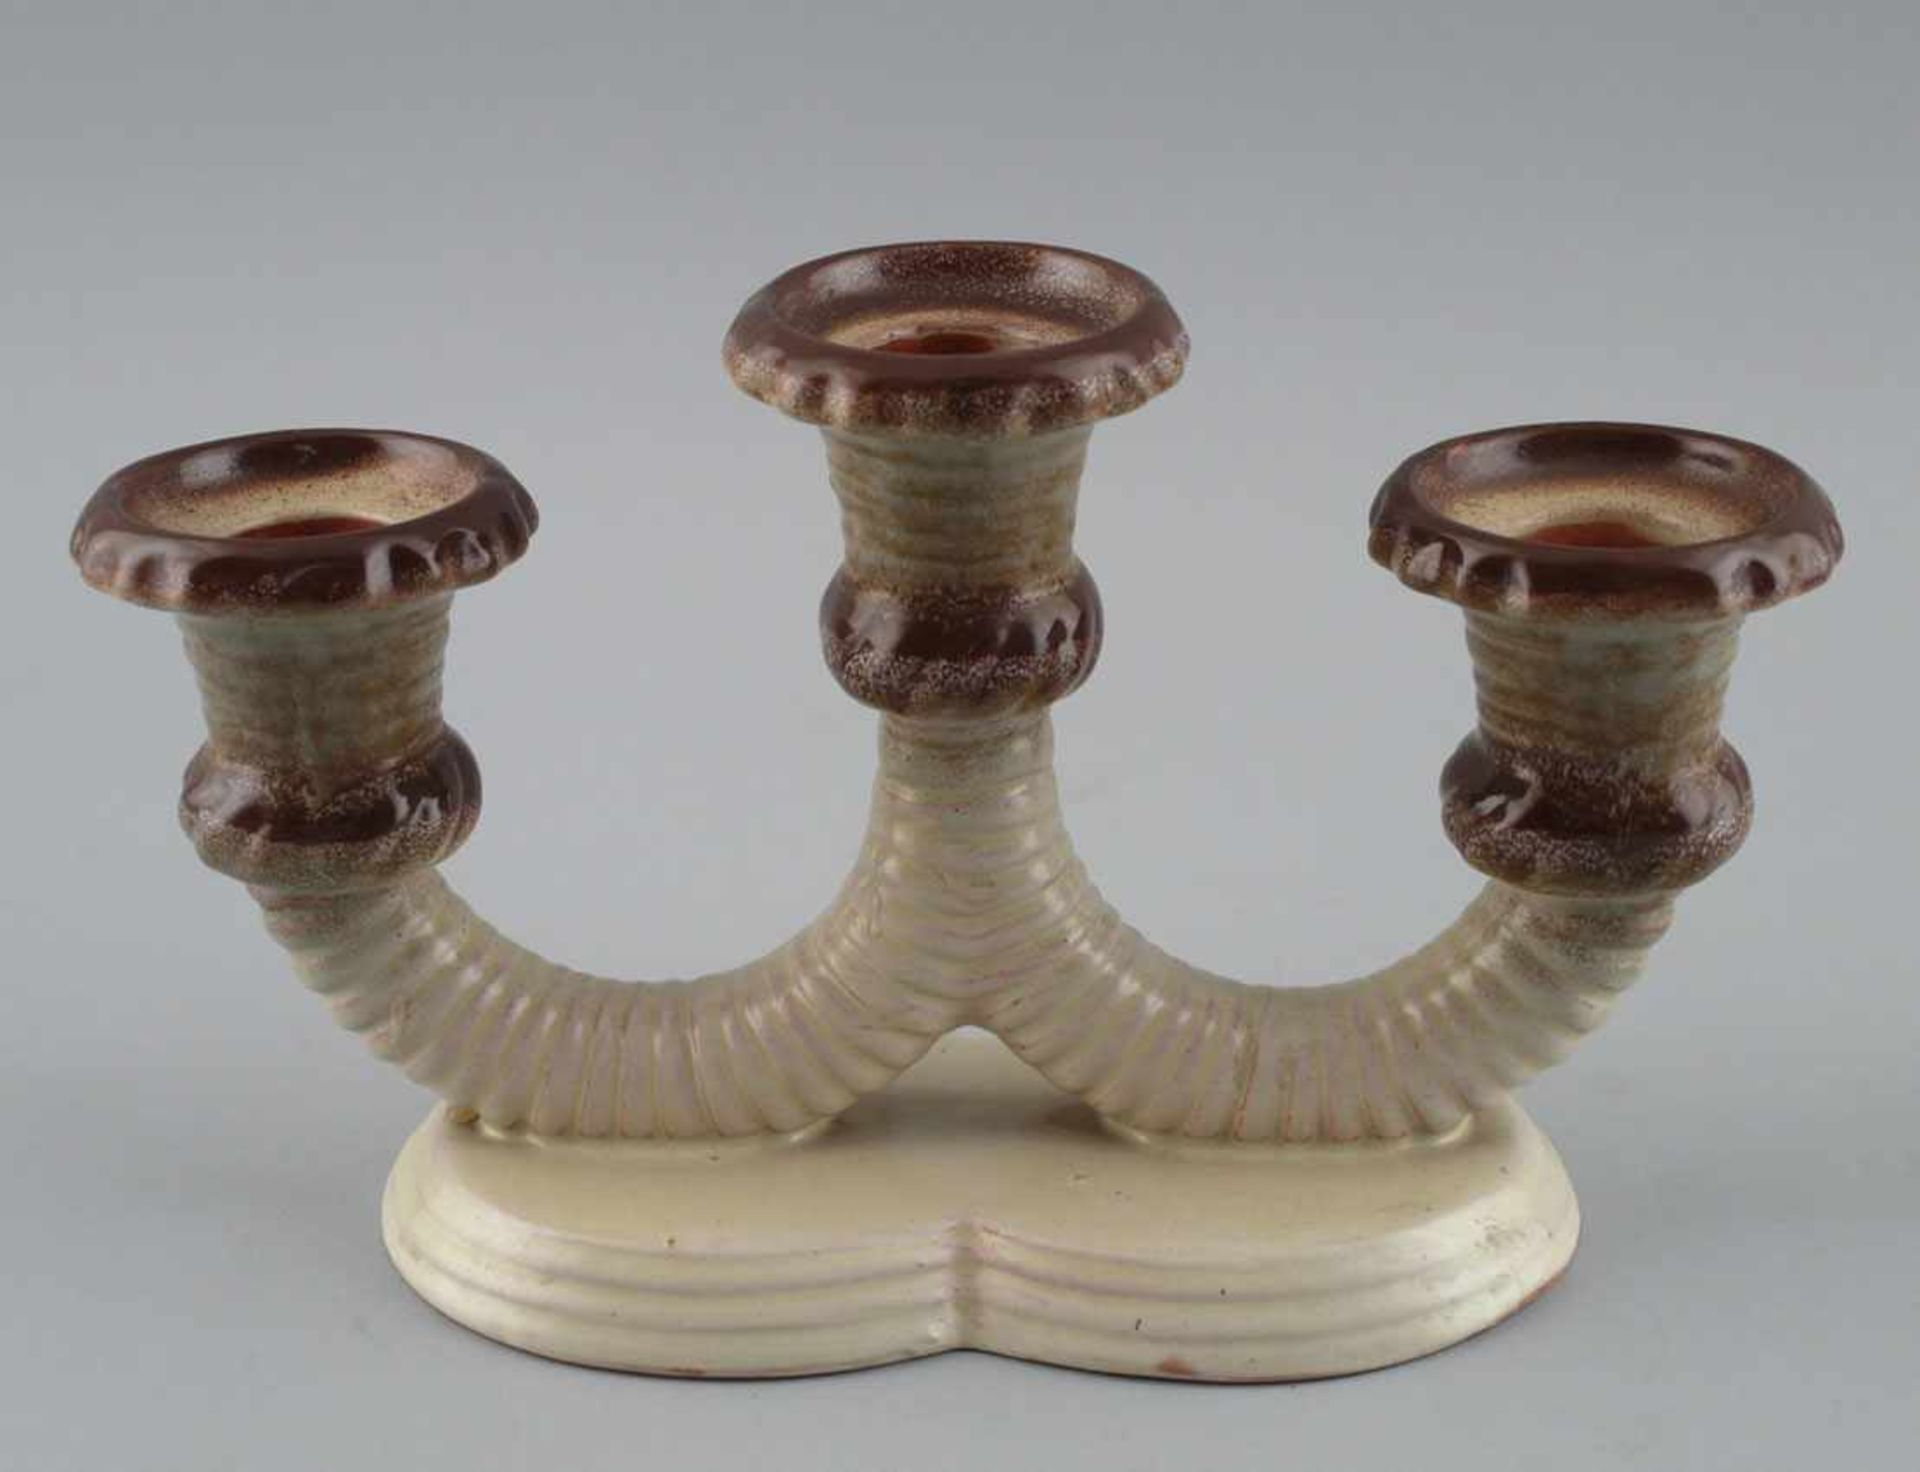 3-Flammiger Tisch - Leuchter Keramik, ungemarkt, um 1920/40, roter Scherben beige und braun